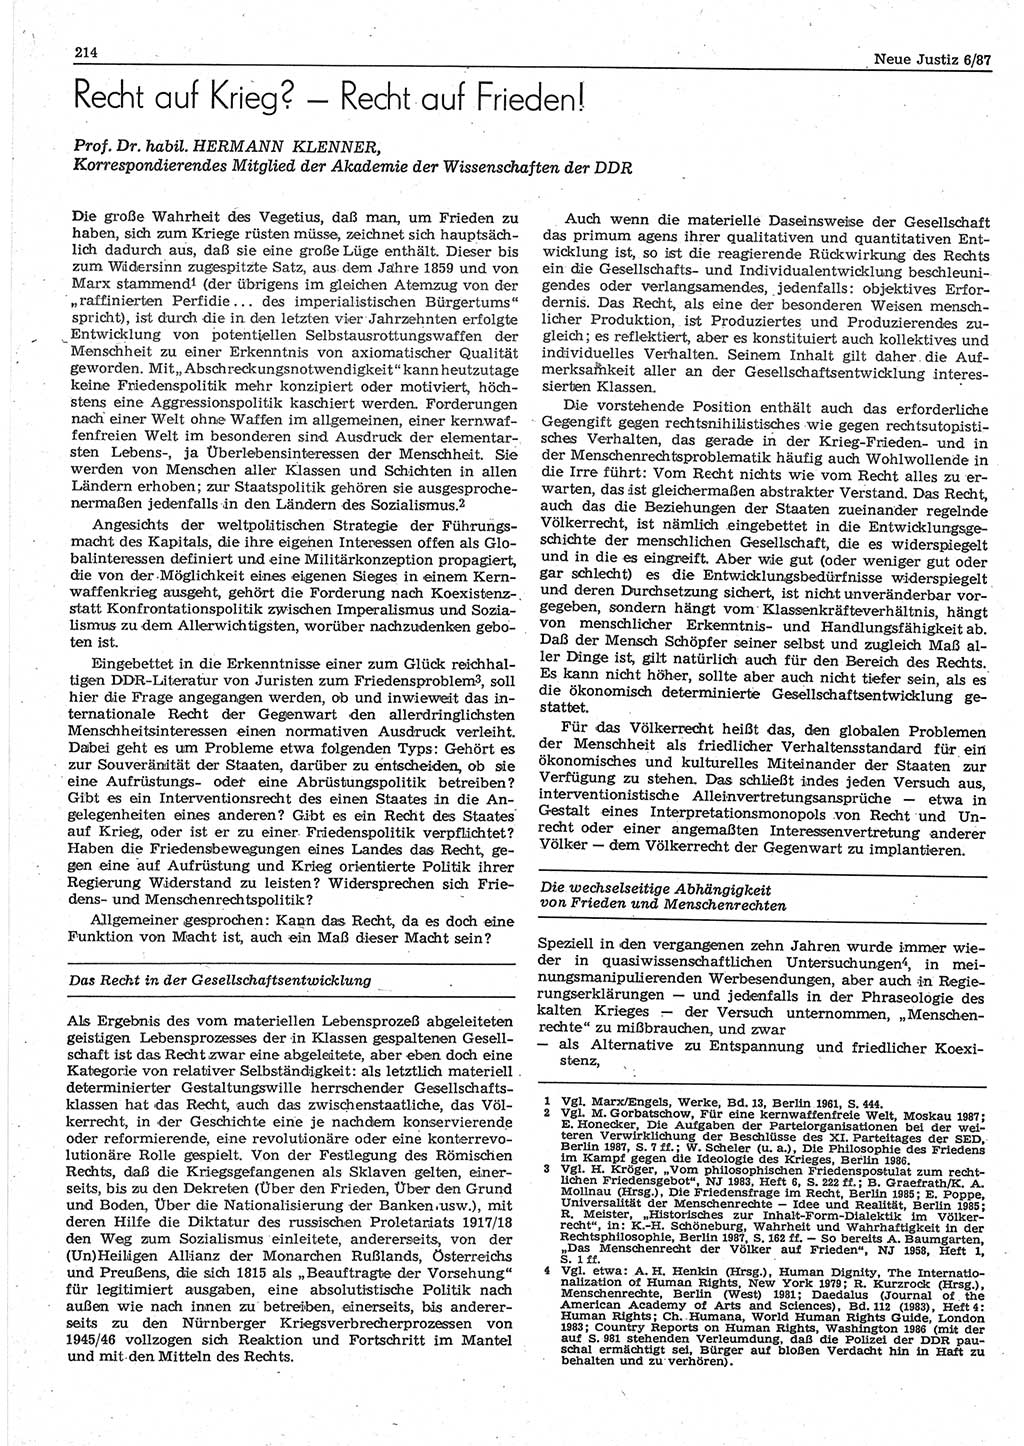 Neue Justiz (NJ), Zeitschrift für sozialistisches Recht und Gesetzlichkeit [Deutsche Demokratische Republik (DDR)], 41. Jahrgang 1987, Seite 214 (NJ DDR 1987, S. 214)